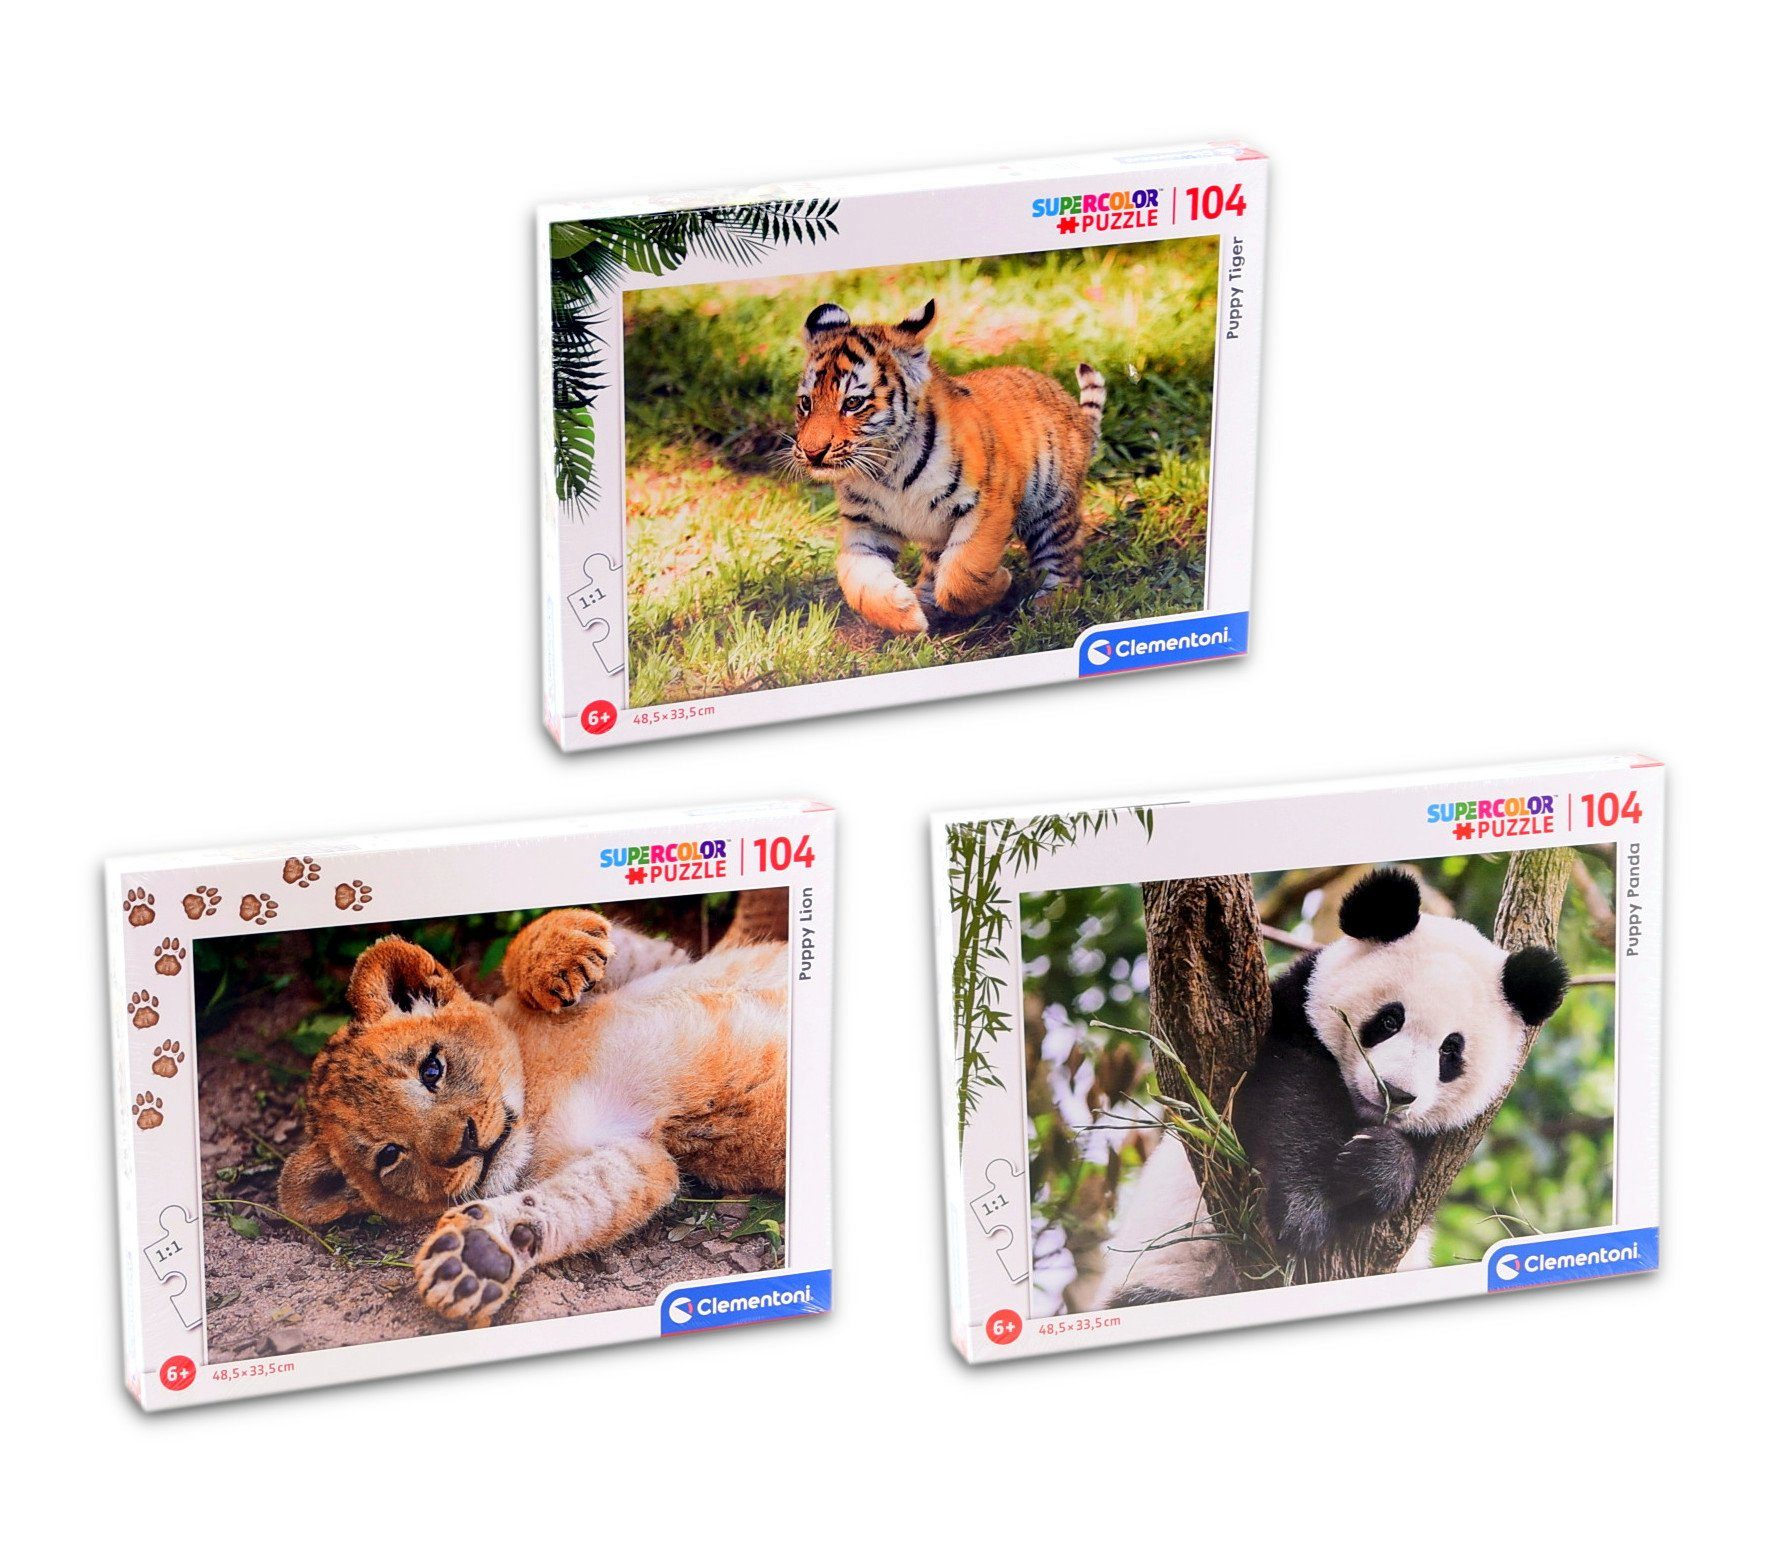 Clementoni® Puzzle Supercolor Puzzle - 3er Set 104 Teile - Puppy (Tiger, Löwe, Panda), Puzzleteile, 3x 104 Teile